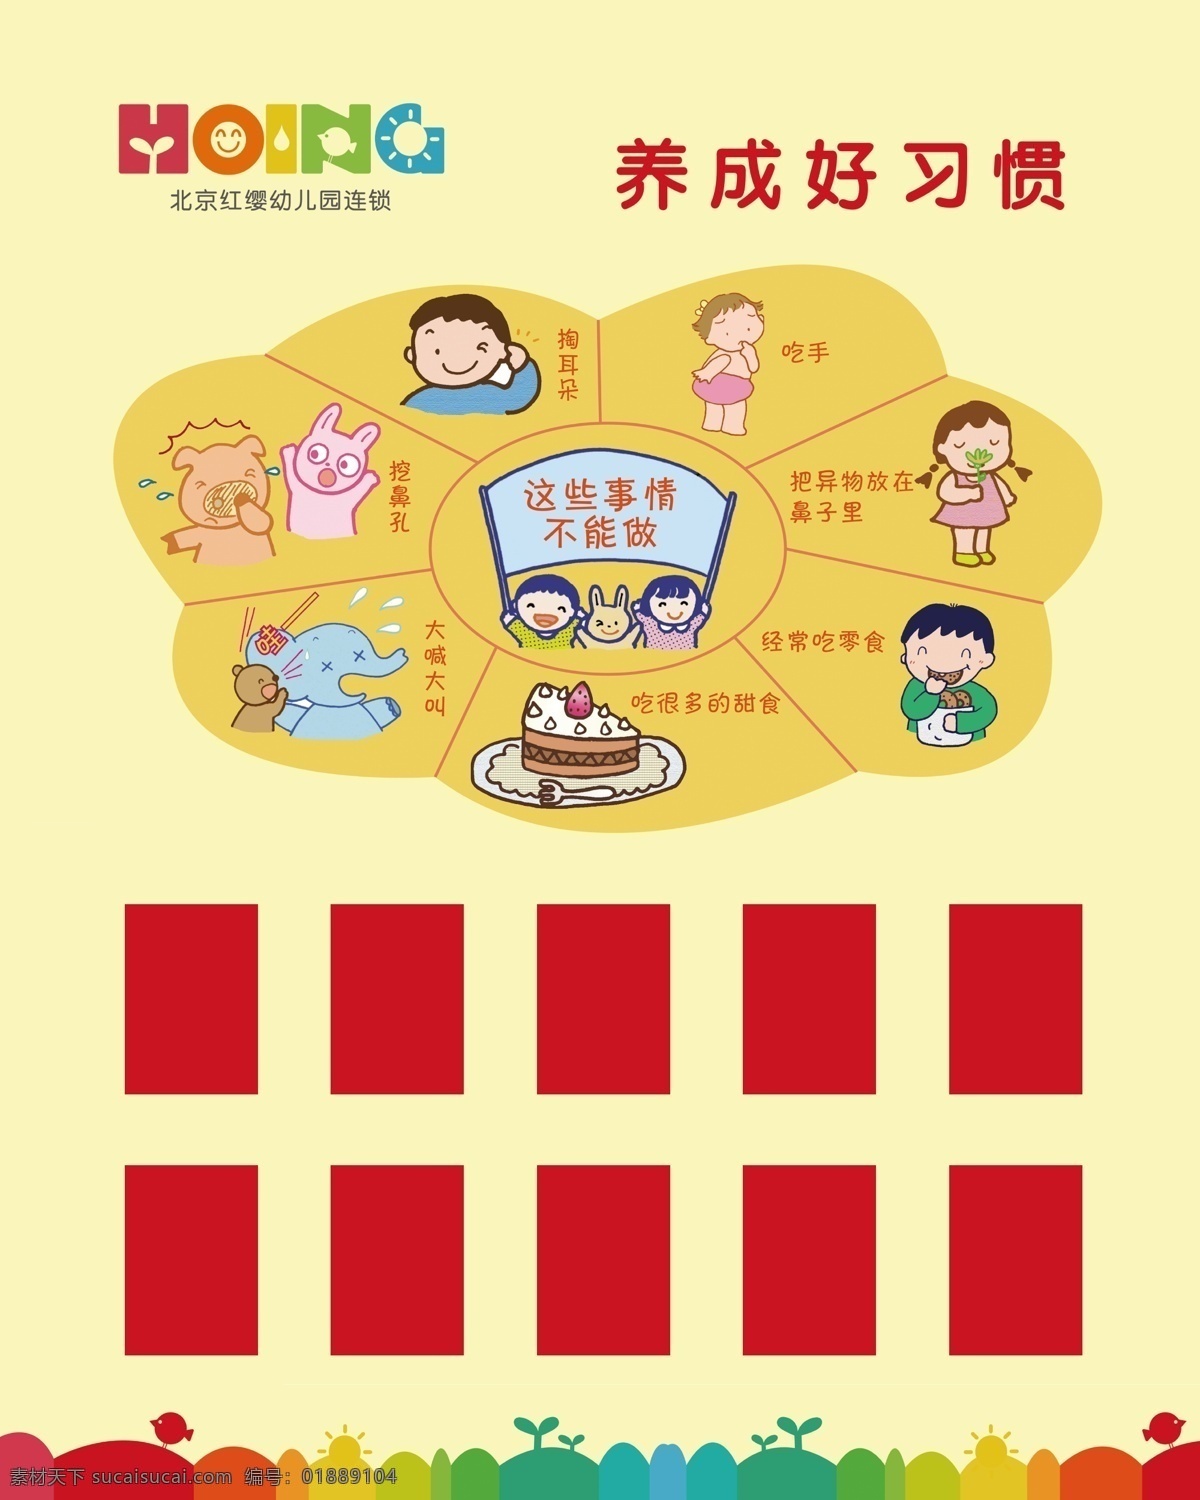 养成好习惯 幼儿 北京红缨 幼儿健康 幼儿卫生 幼儿园展板 幼儿园版面 红缨幼儿园 注意卫生 展板模板